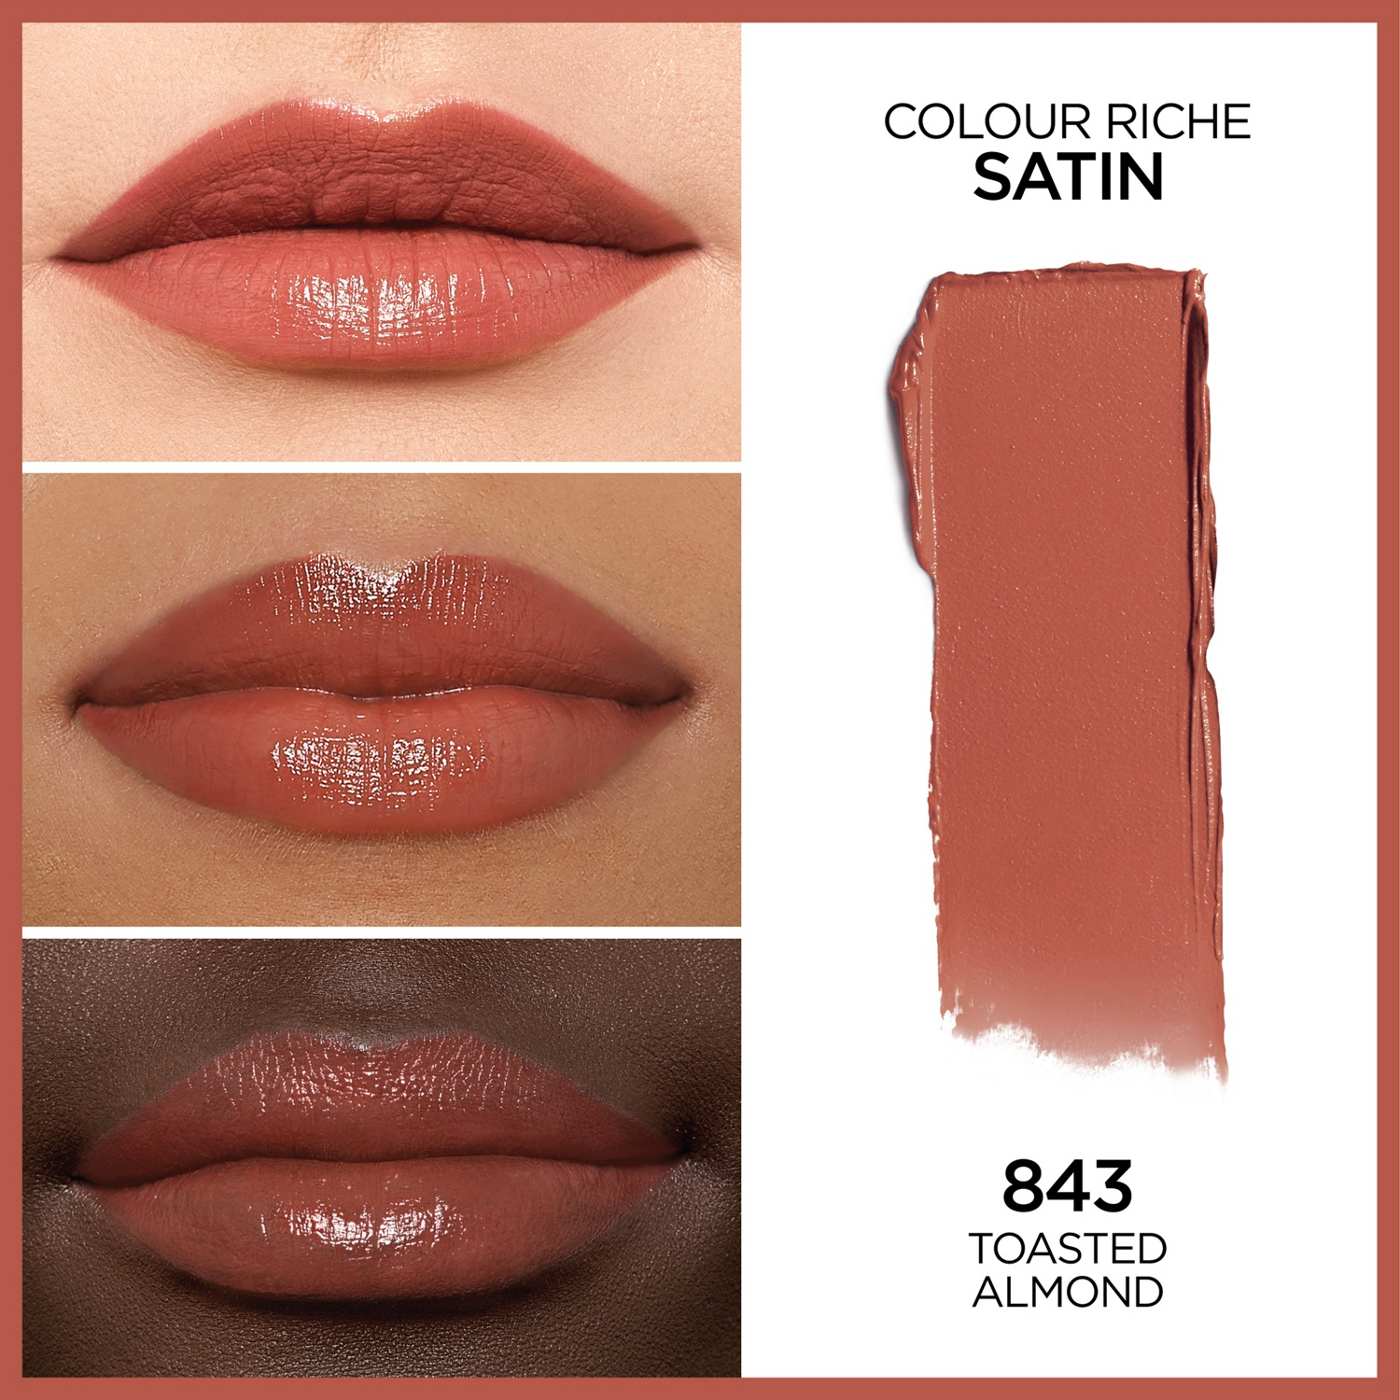 L'Oréal Paris Colour Riche Original Satin Lipstick - Toasted Almond; image 3 of 5